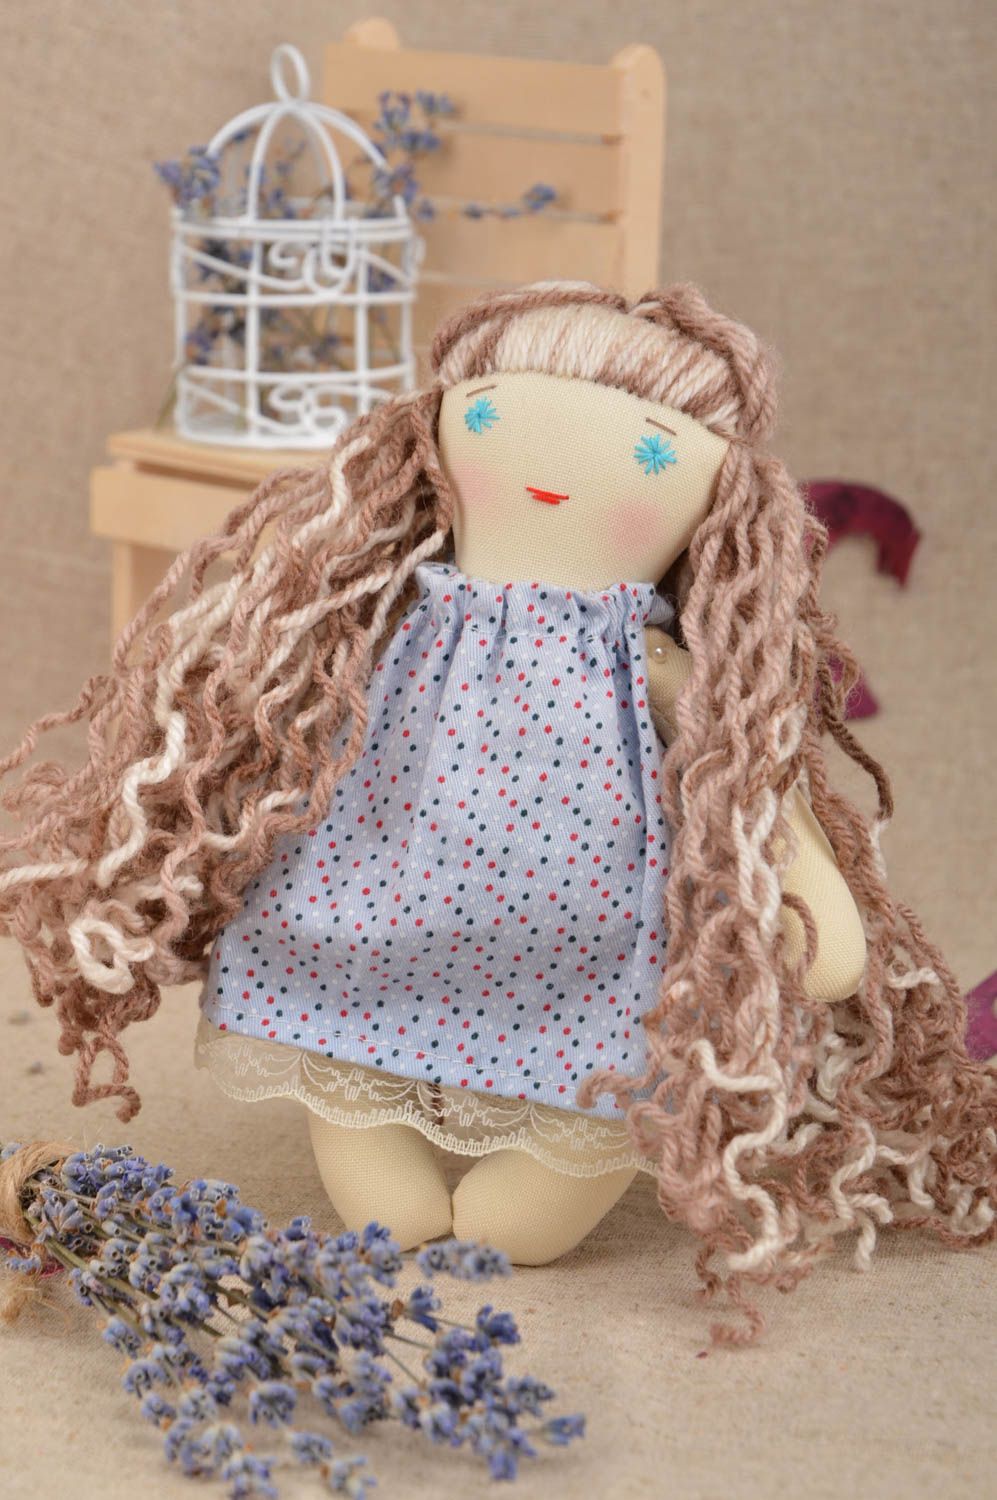 Peluche hecho a mano con ojos azules en vestido muñeco original juguete de niño foto 1